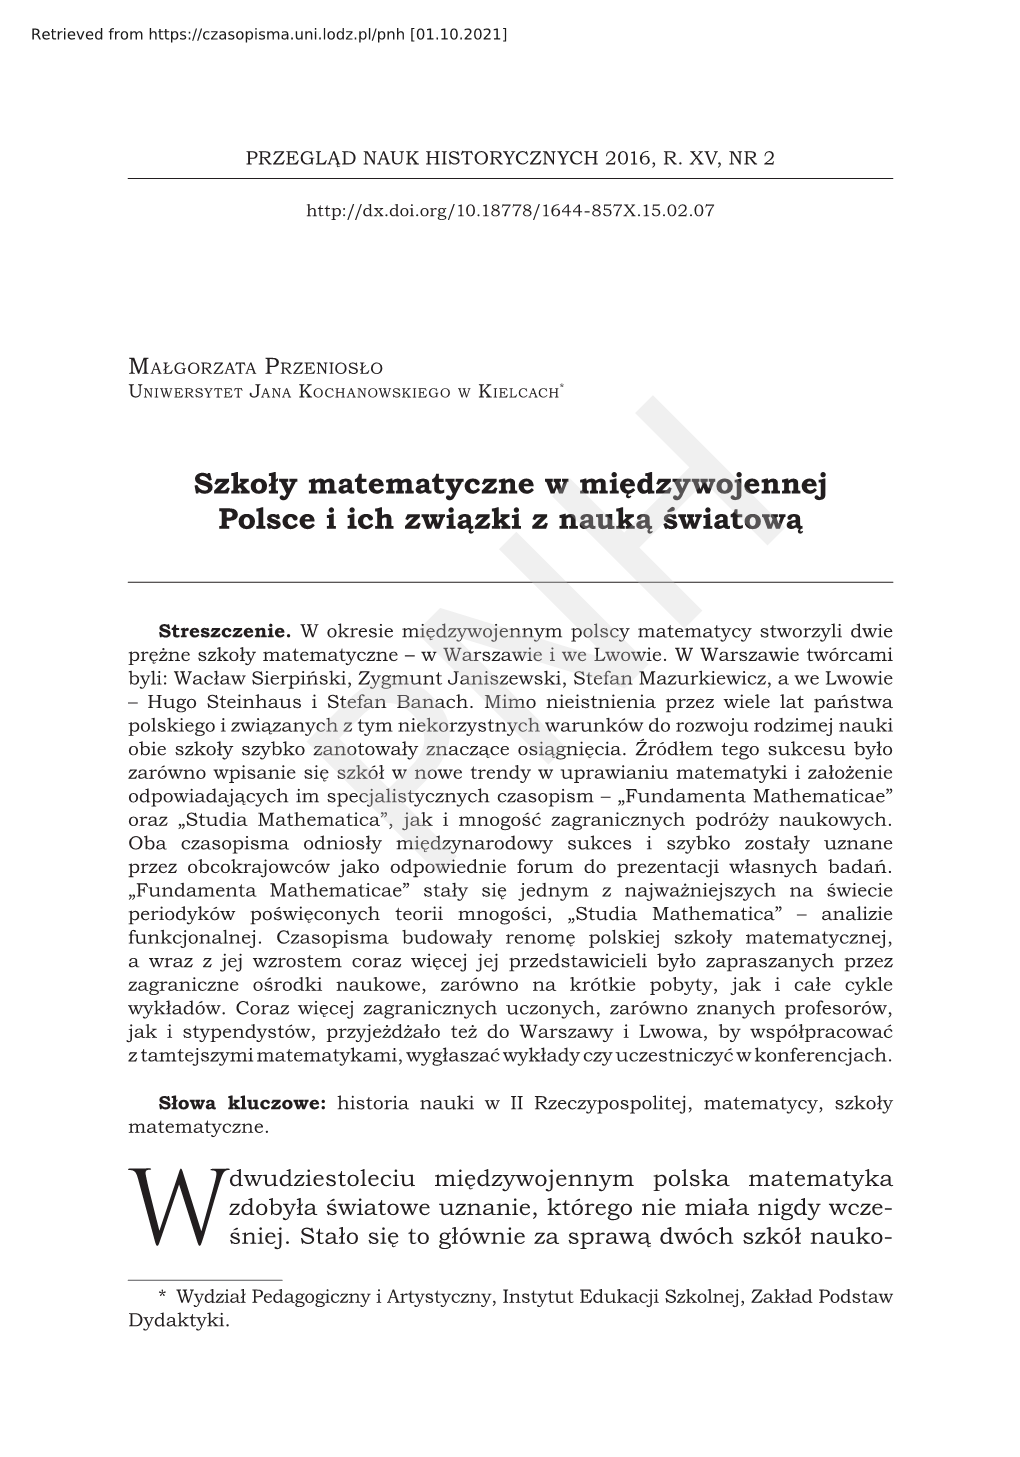 Szkoły Matematyczne W Międzywojennej Polsce I Ich Związki Z Nauką Światową